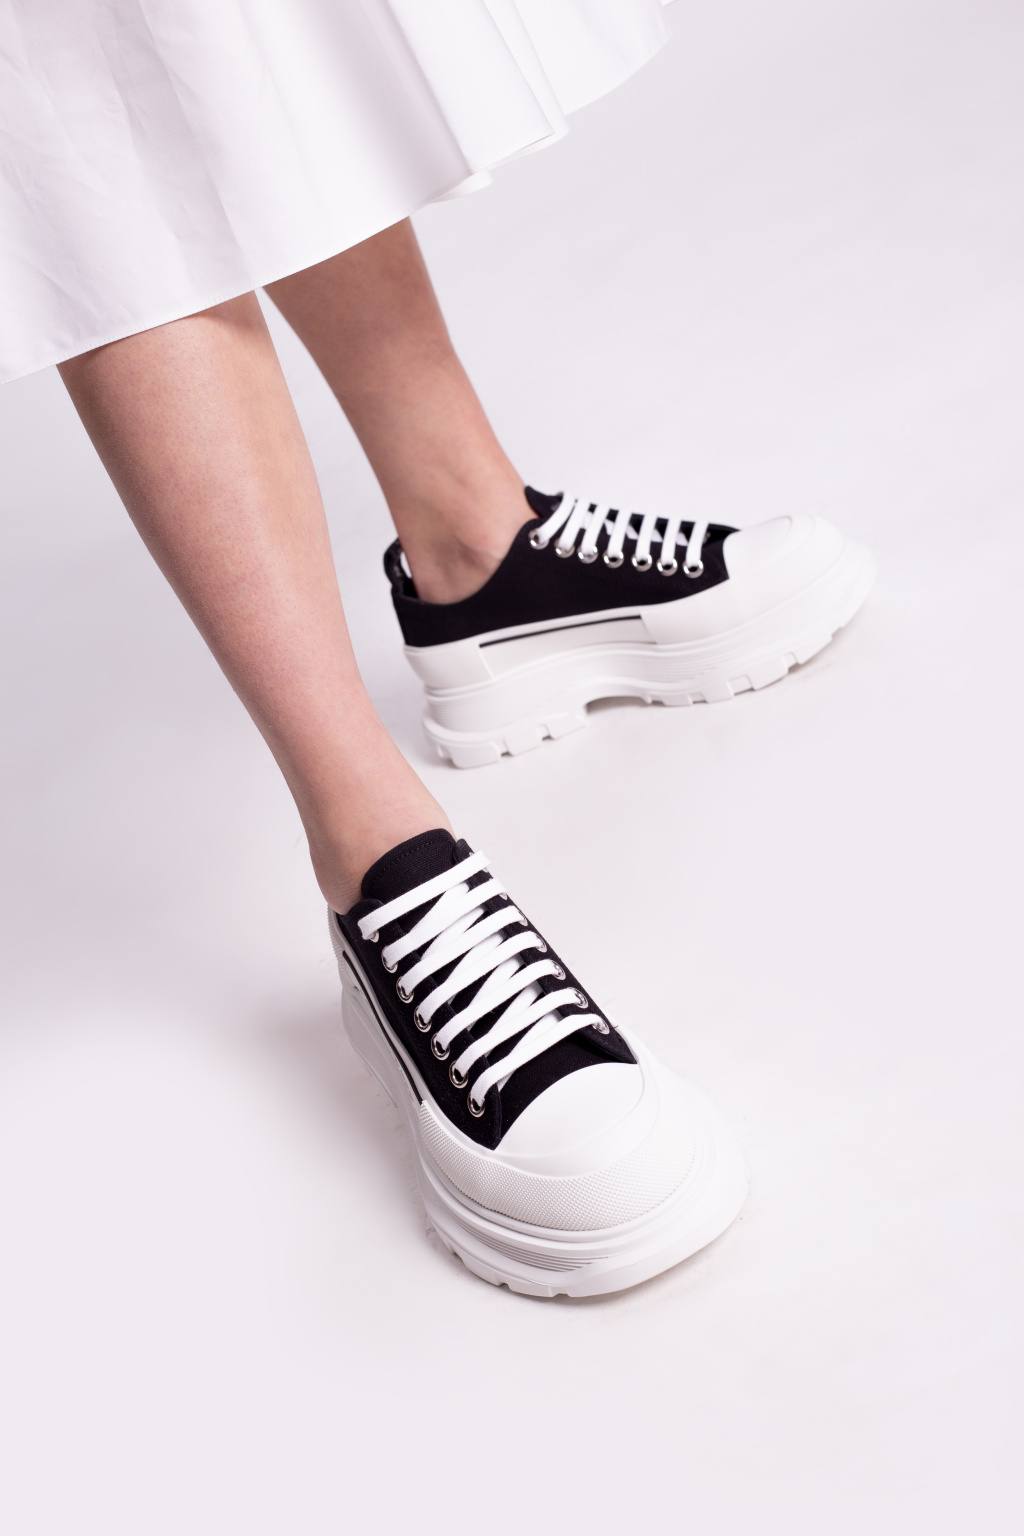 Besparing Blind rouw Alexander McQueen Platform sneakers | Women's Shoes | Vitkac